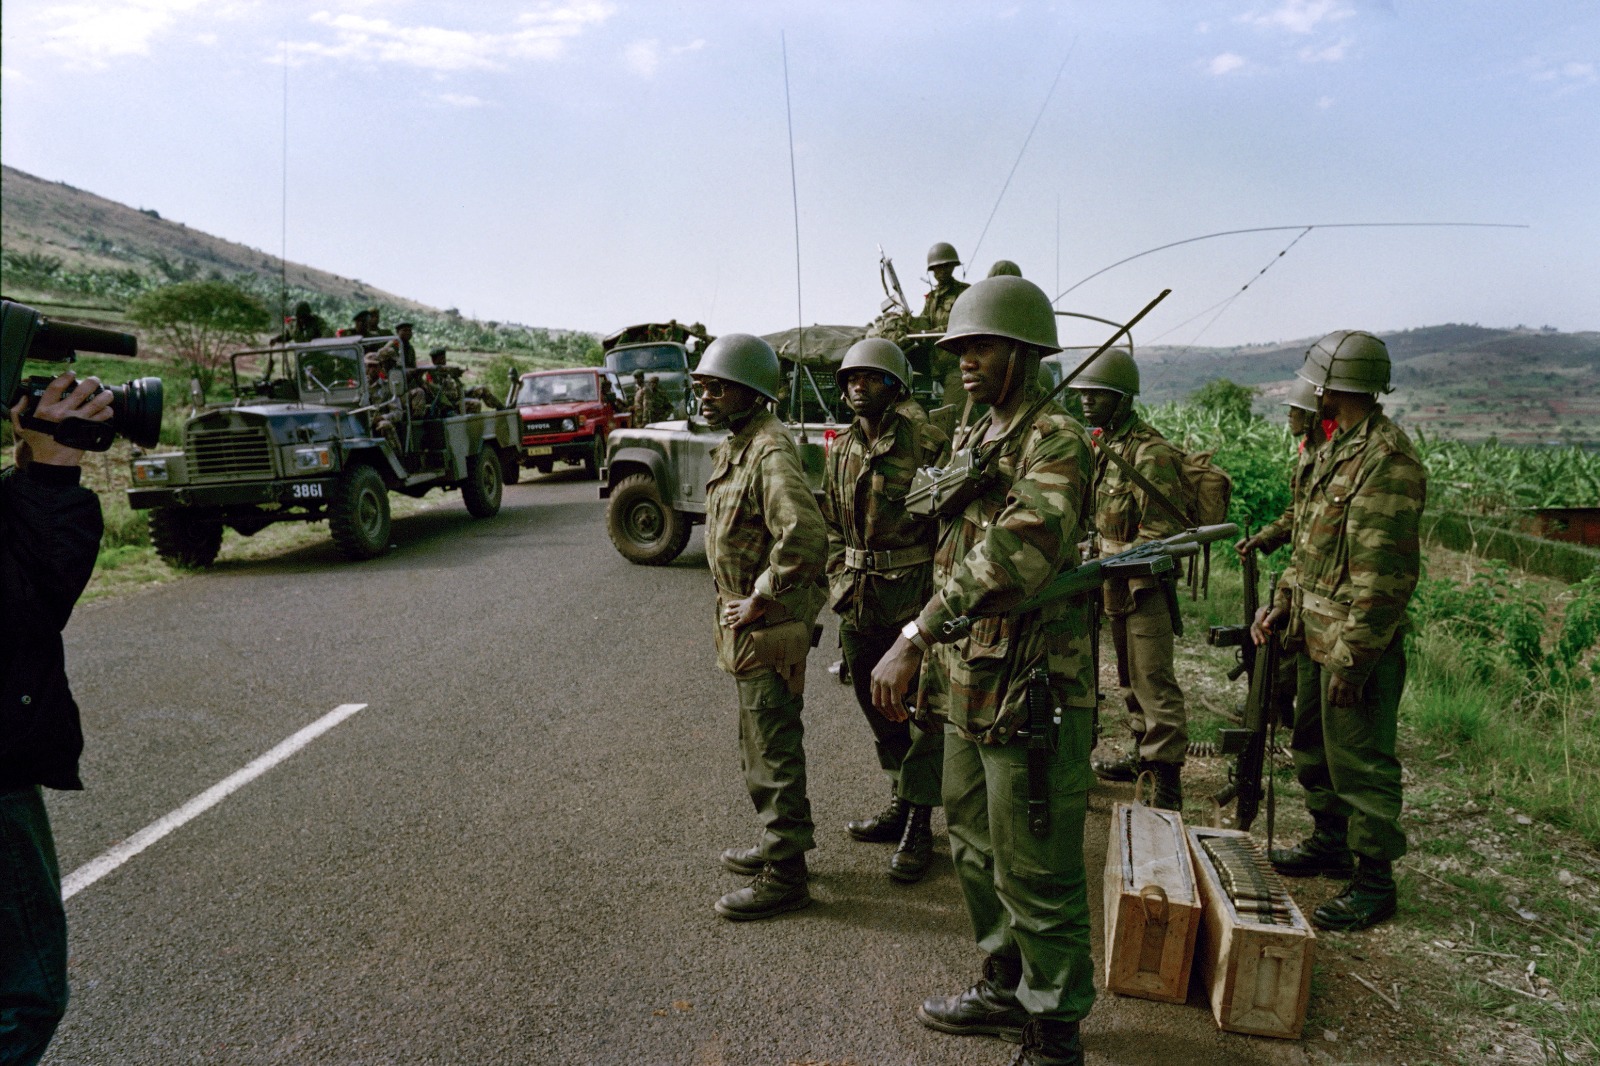 يستعد الجنود الزائيريون لهجومهم في 11 أكتوبر 1990 لمساعدة جنود الحكومة الرواندية على استعادة بلدة جابيرو من المتمردين.